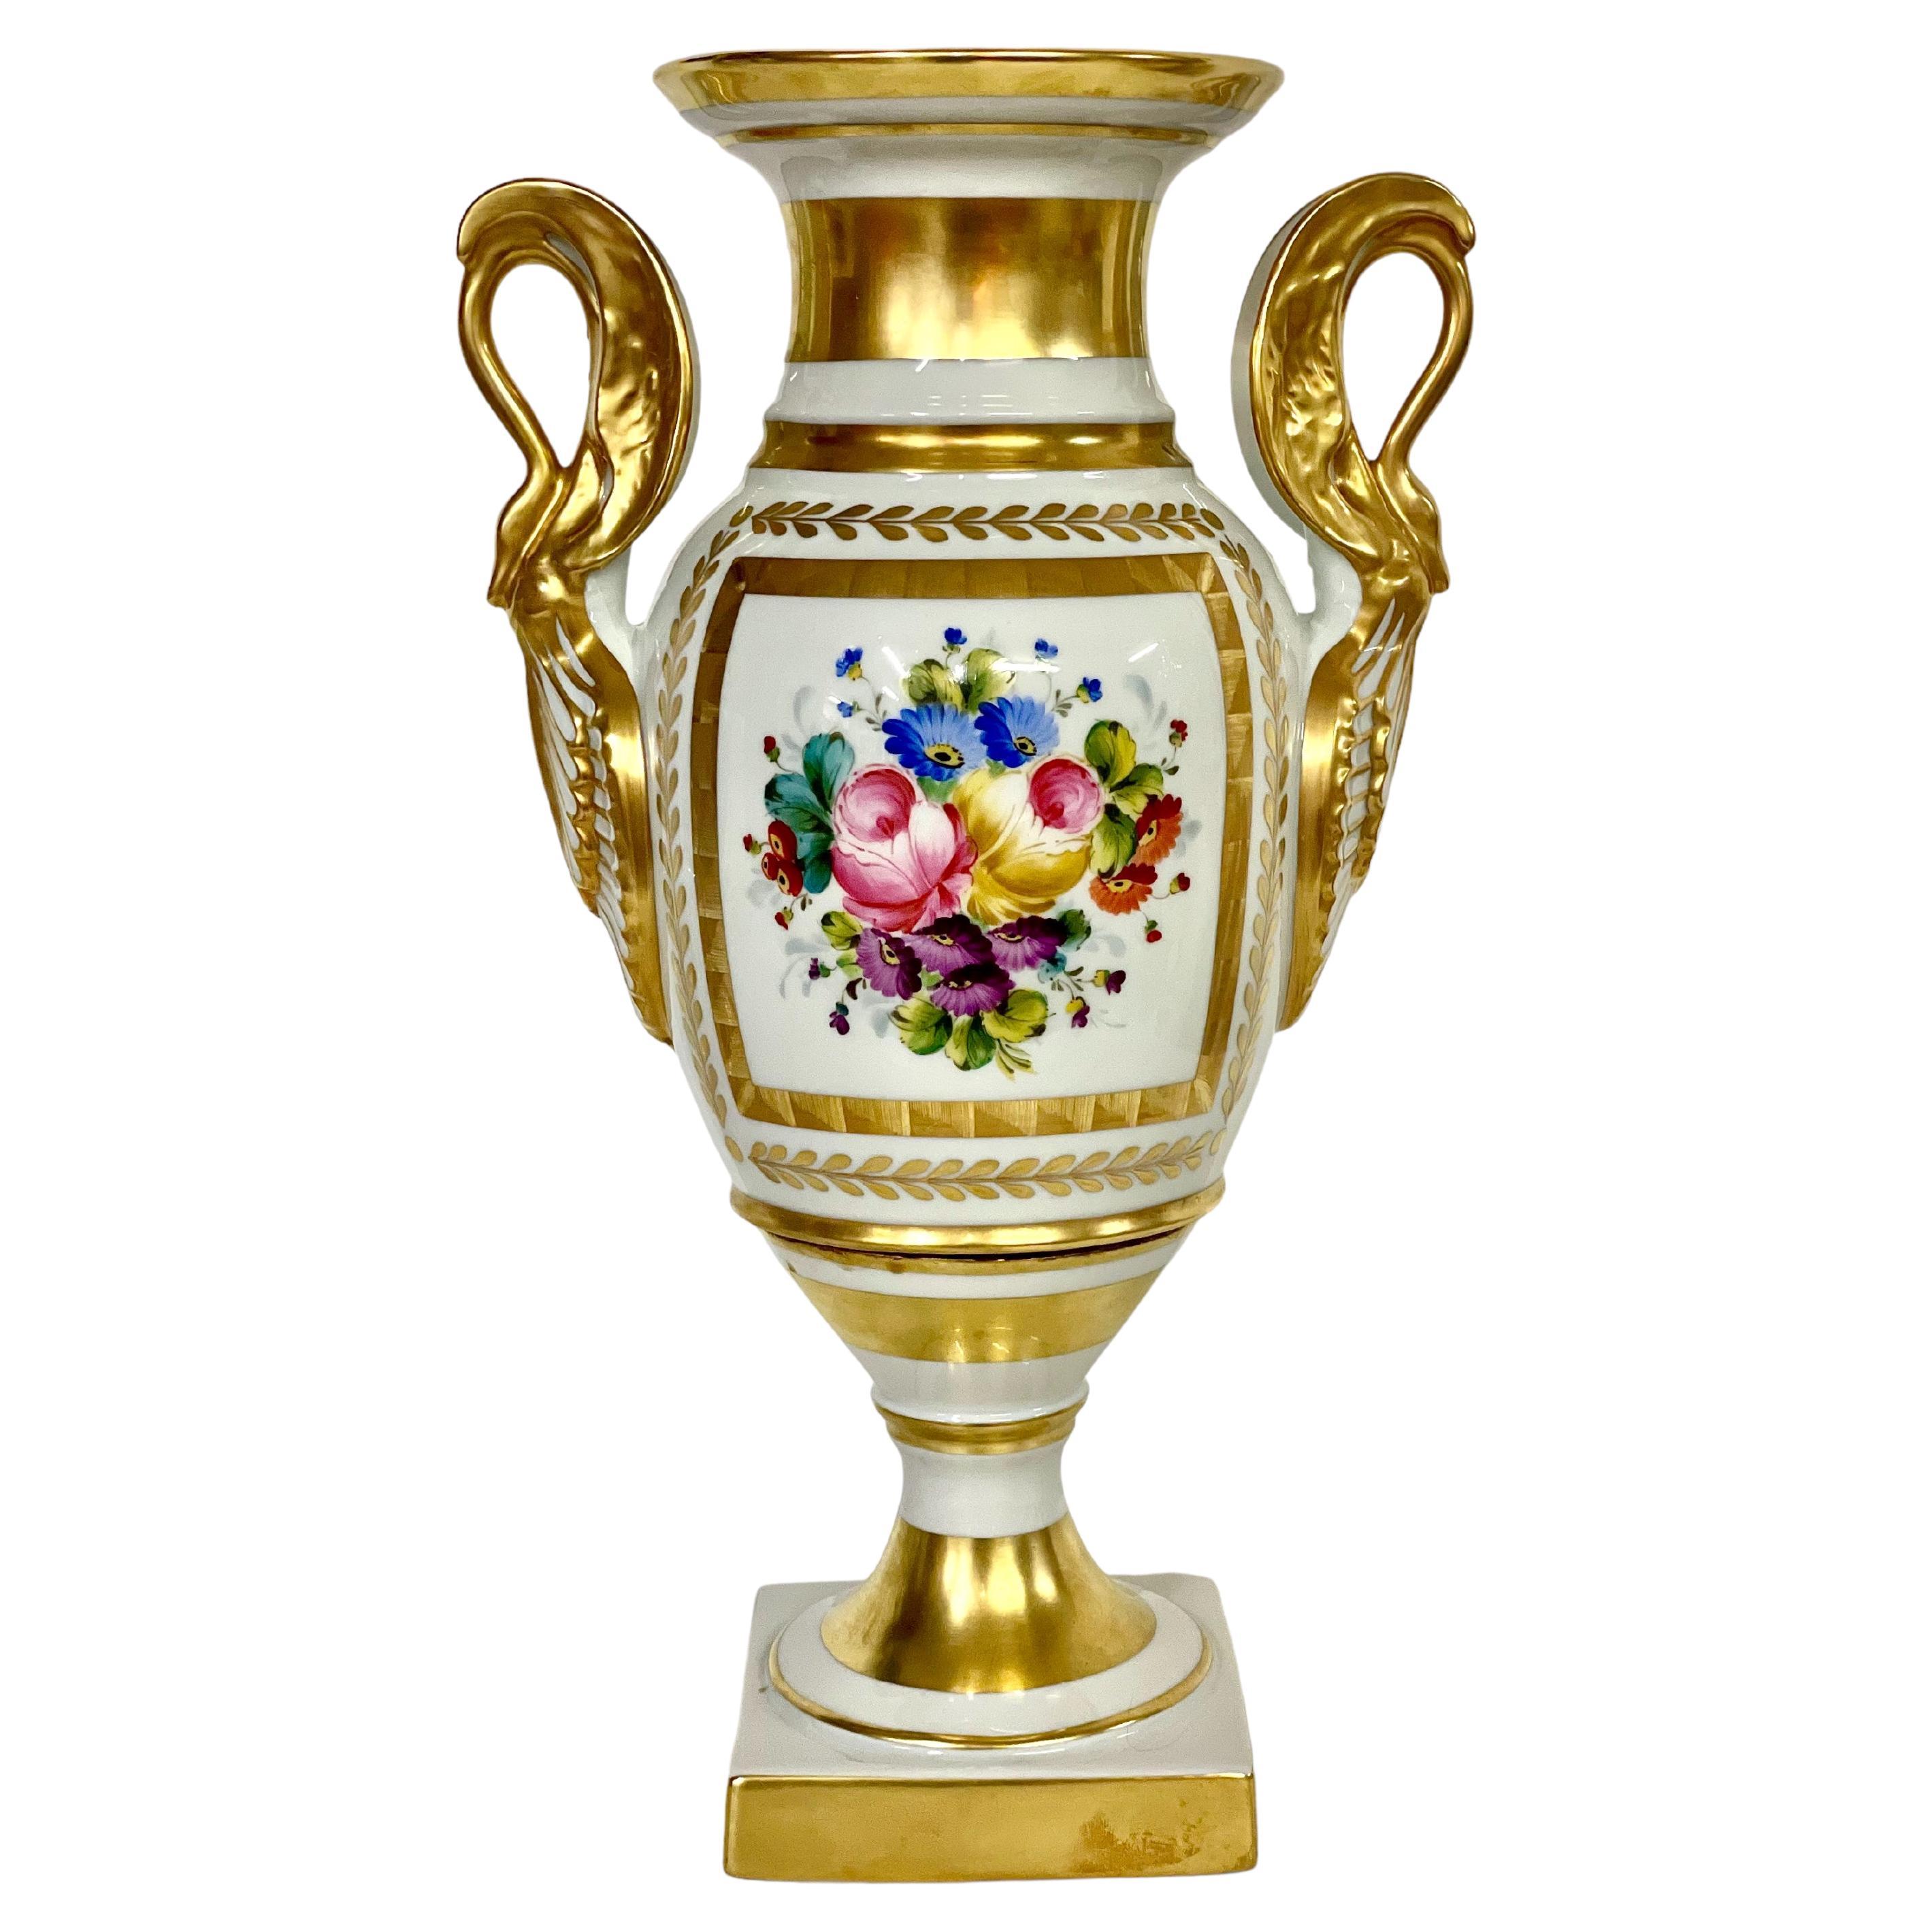 French Limoges Porcelain Gilded Baluster Vase 